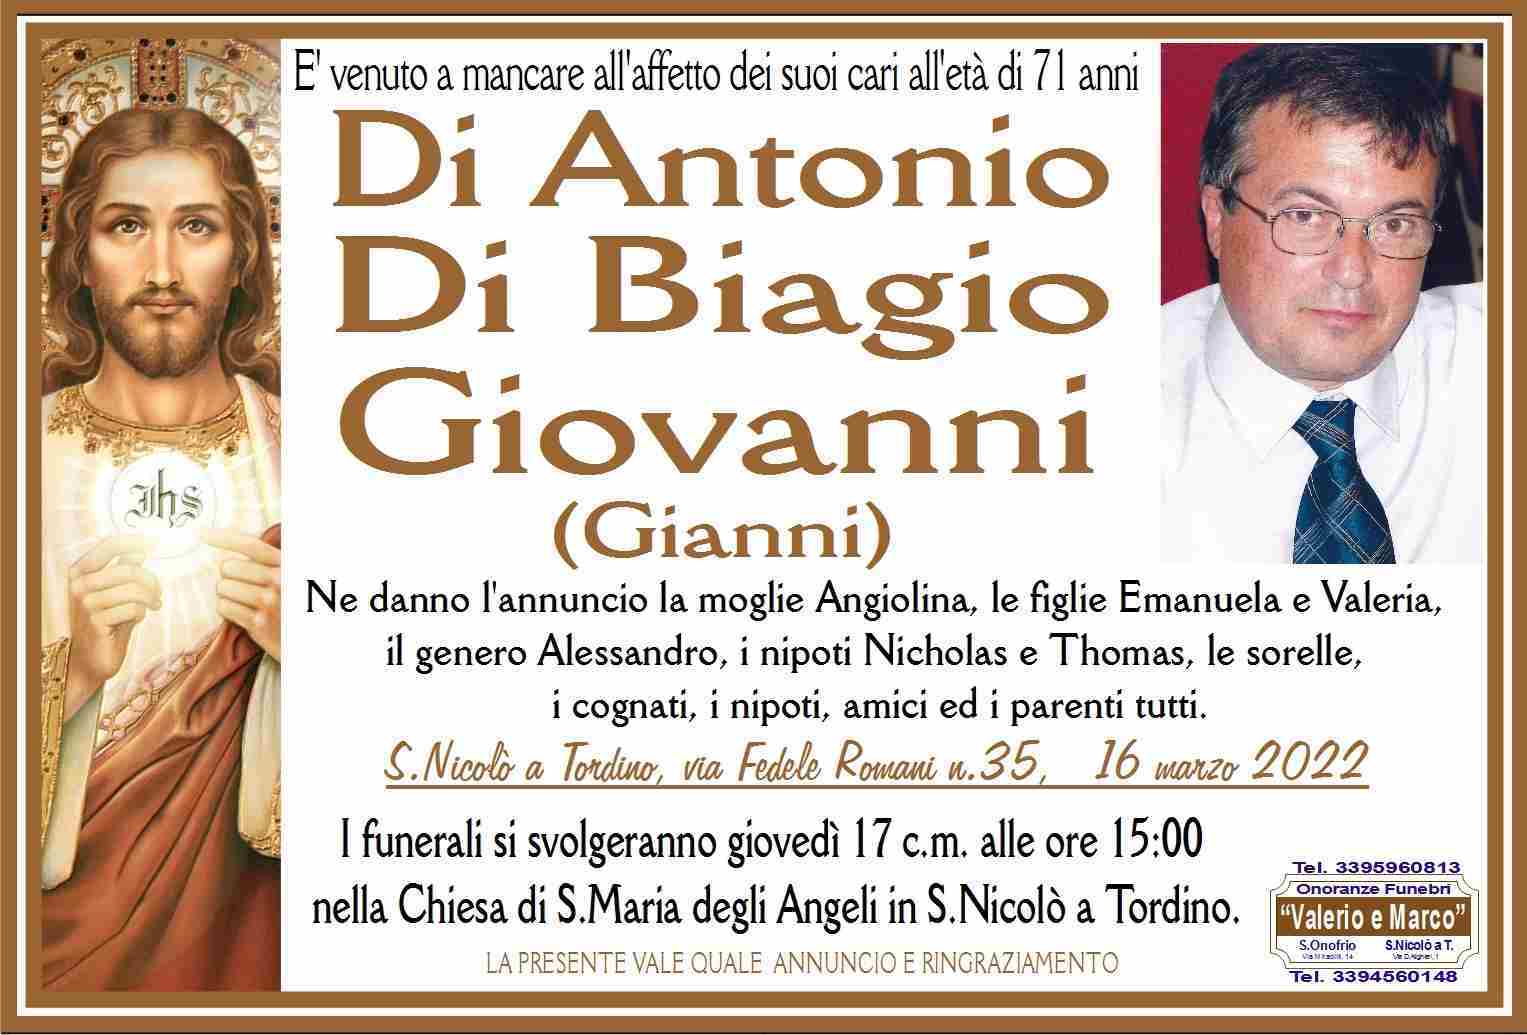 Giovanni Di Antonio Di Biagio